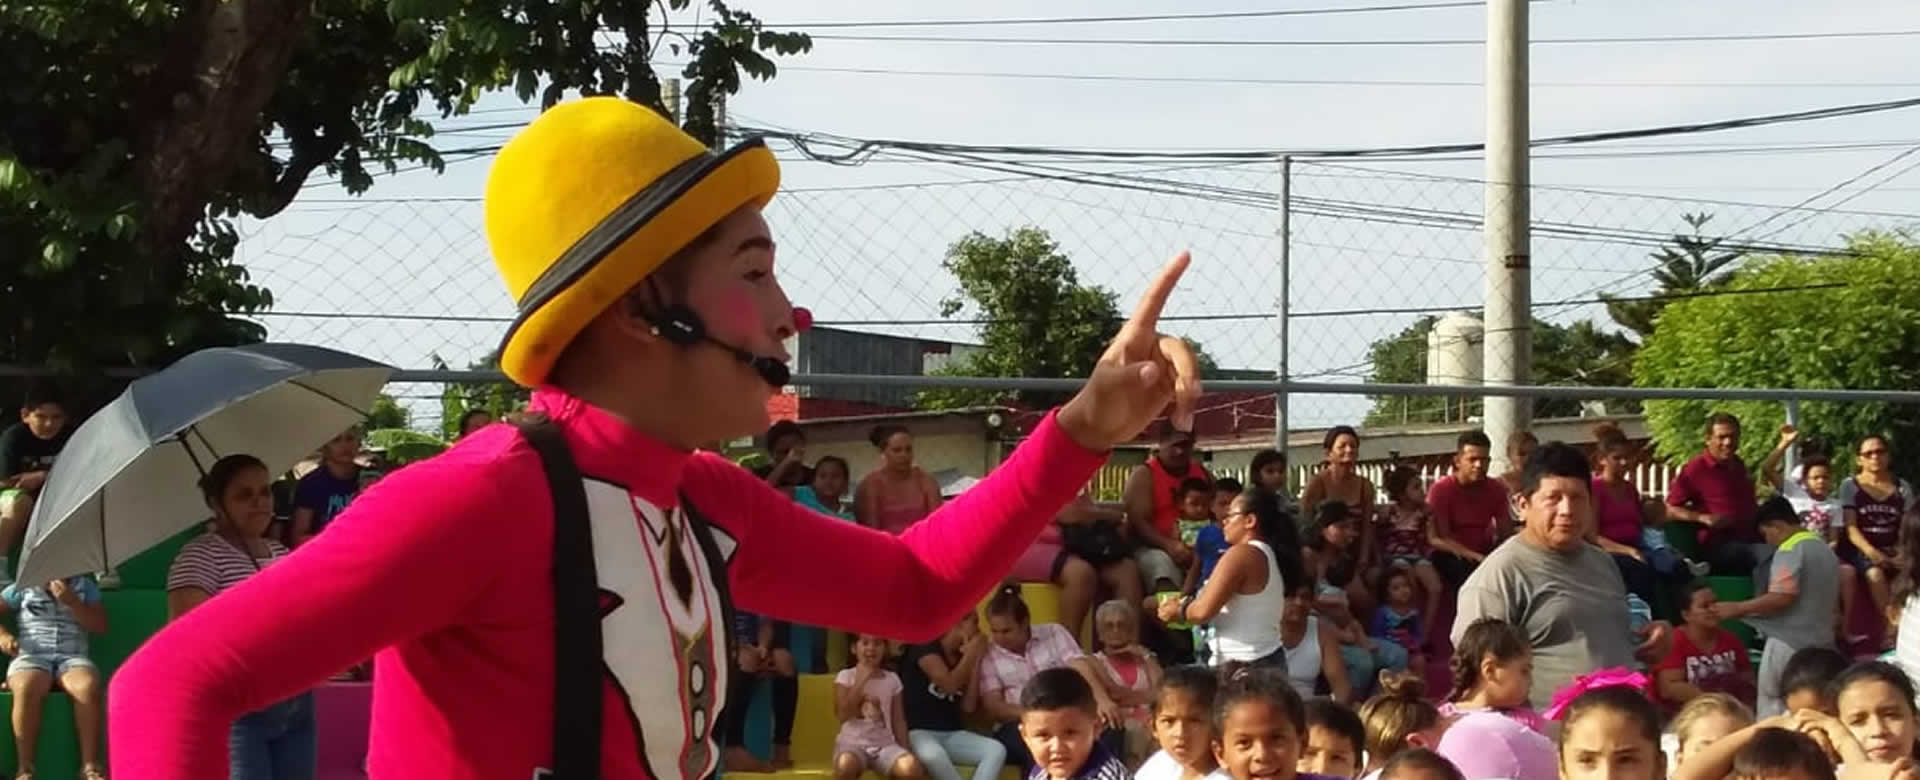 Niñez capitalina vive una tarde recreativa en el Parque El Dorado